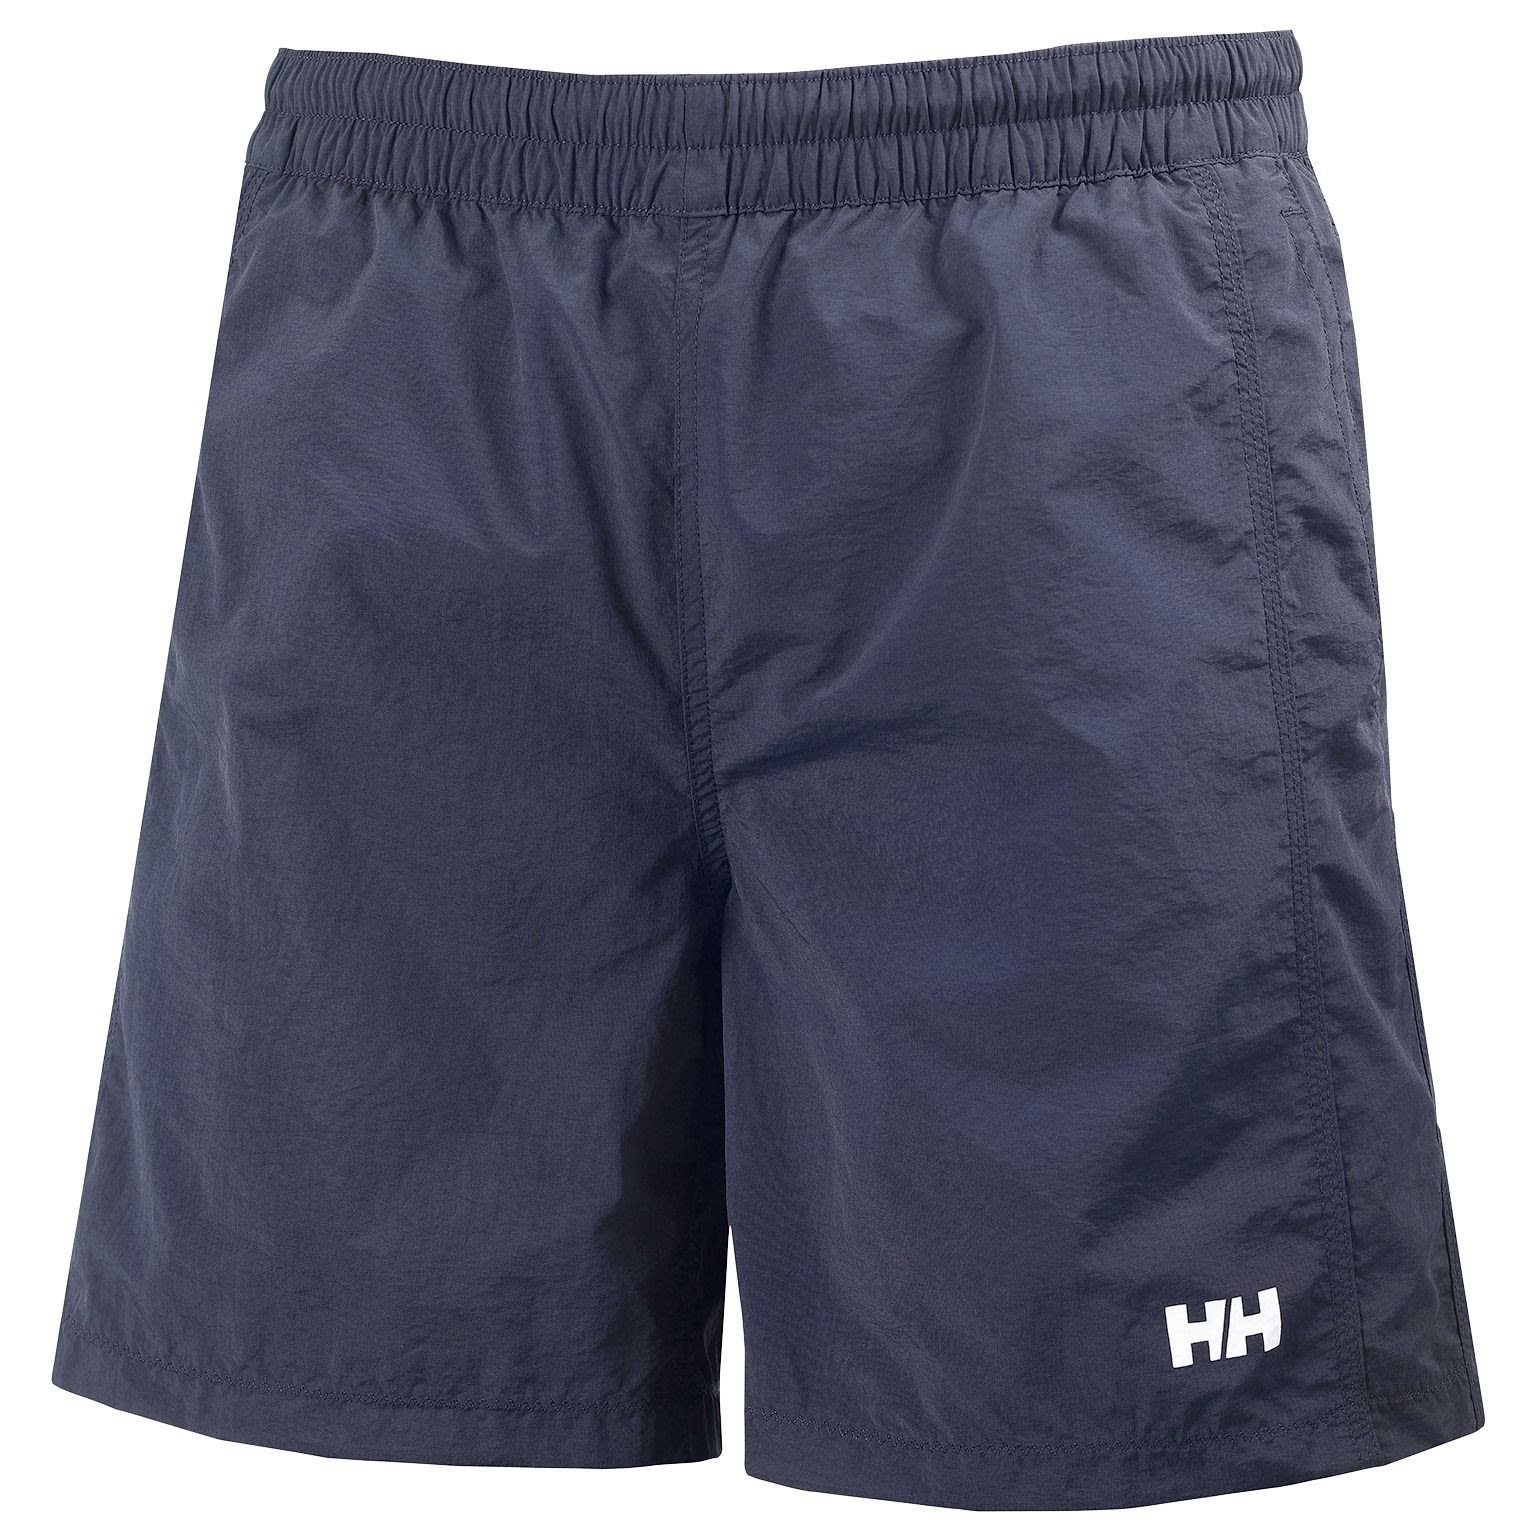 Hansen Swim Hansen M Calshot Helly Shorts Shorts Navy Helly Herren Trunk